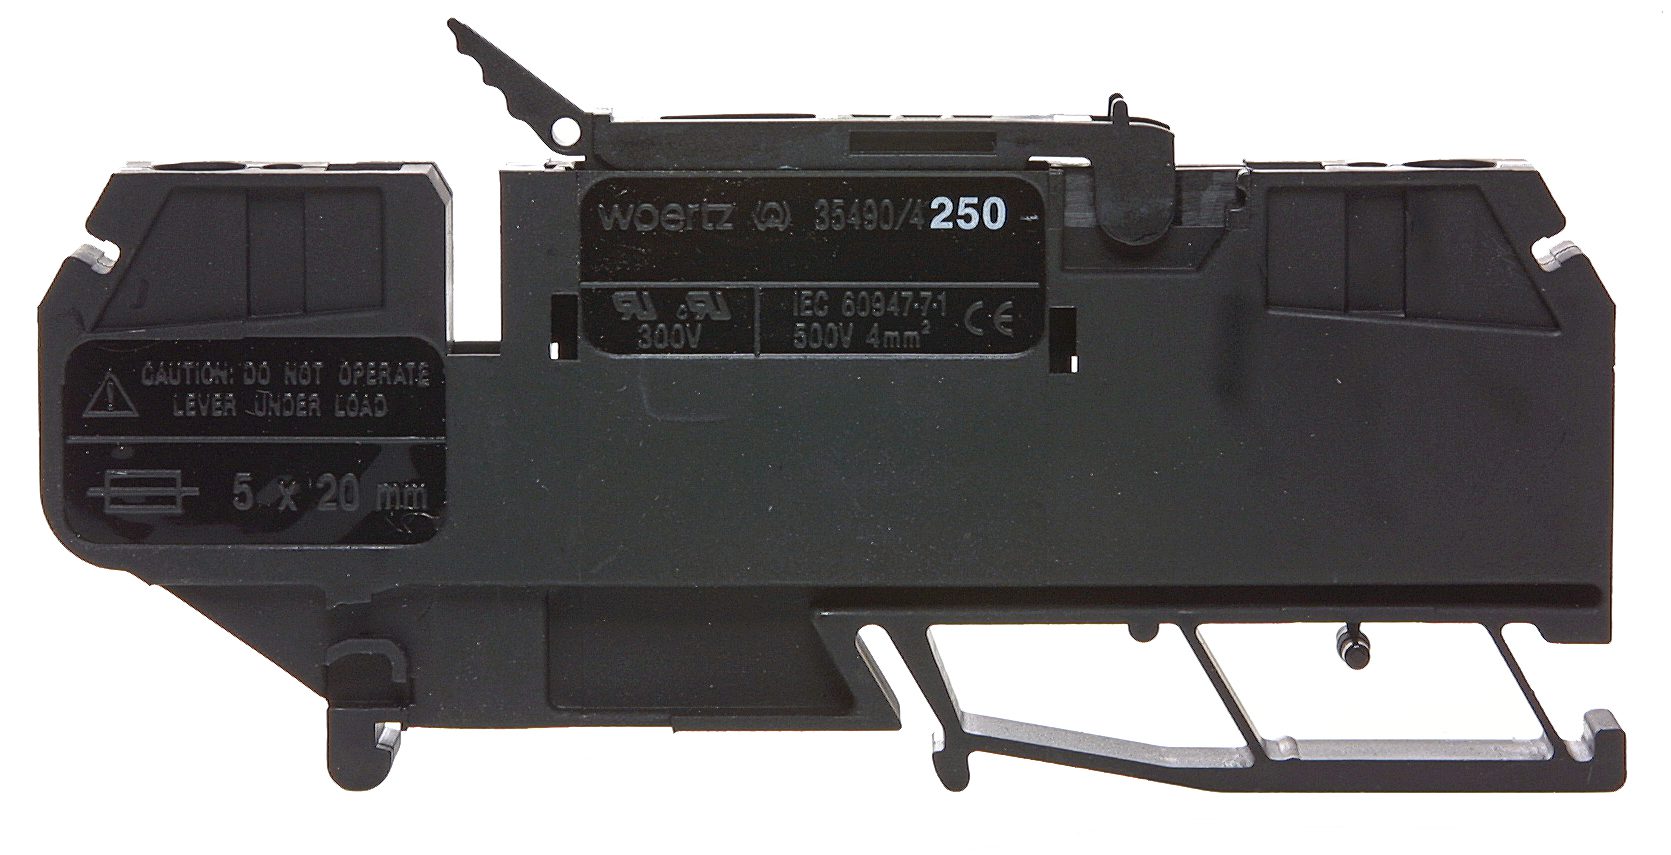 Tension spring fuse terminal 4mm² black for voltage 85-264V AC/DC